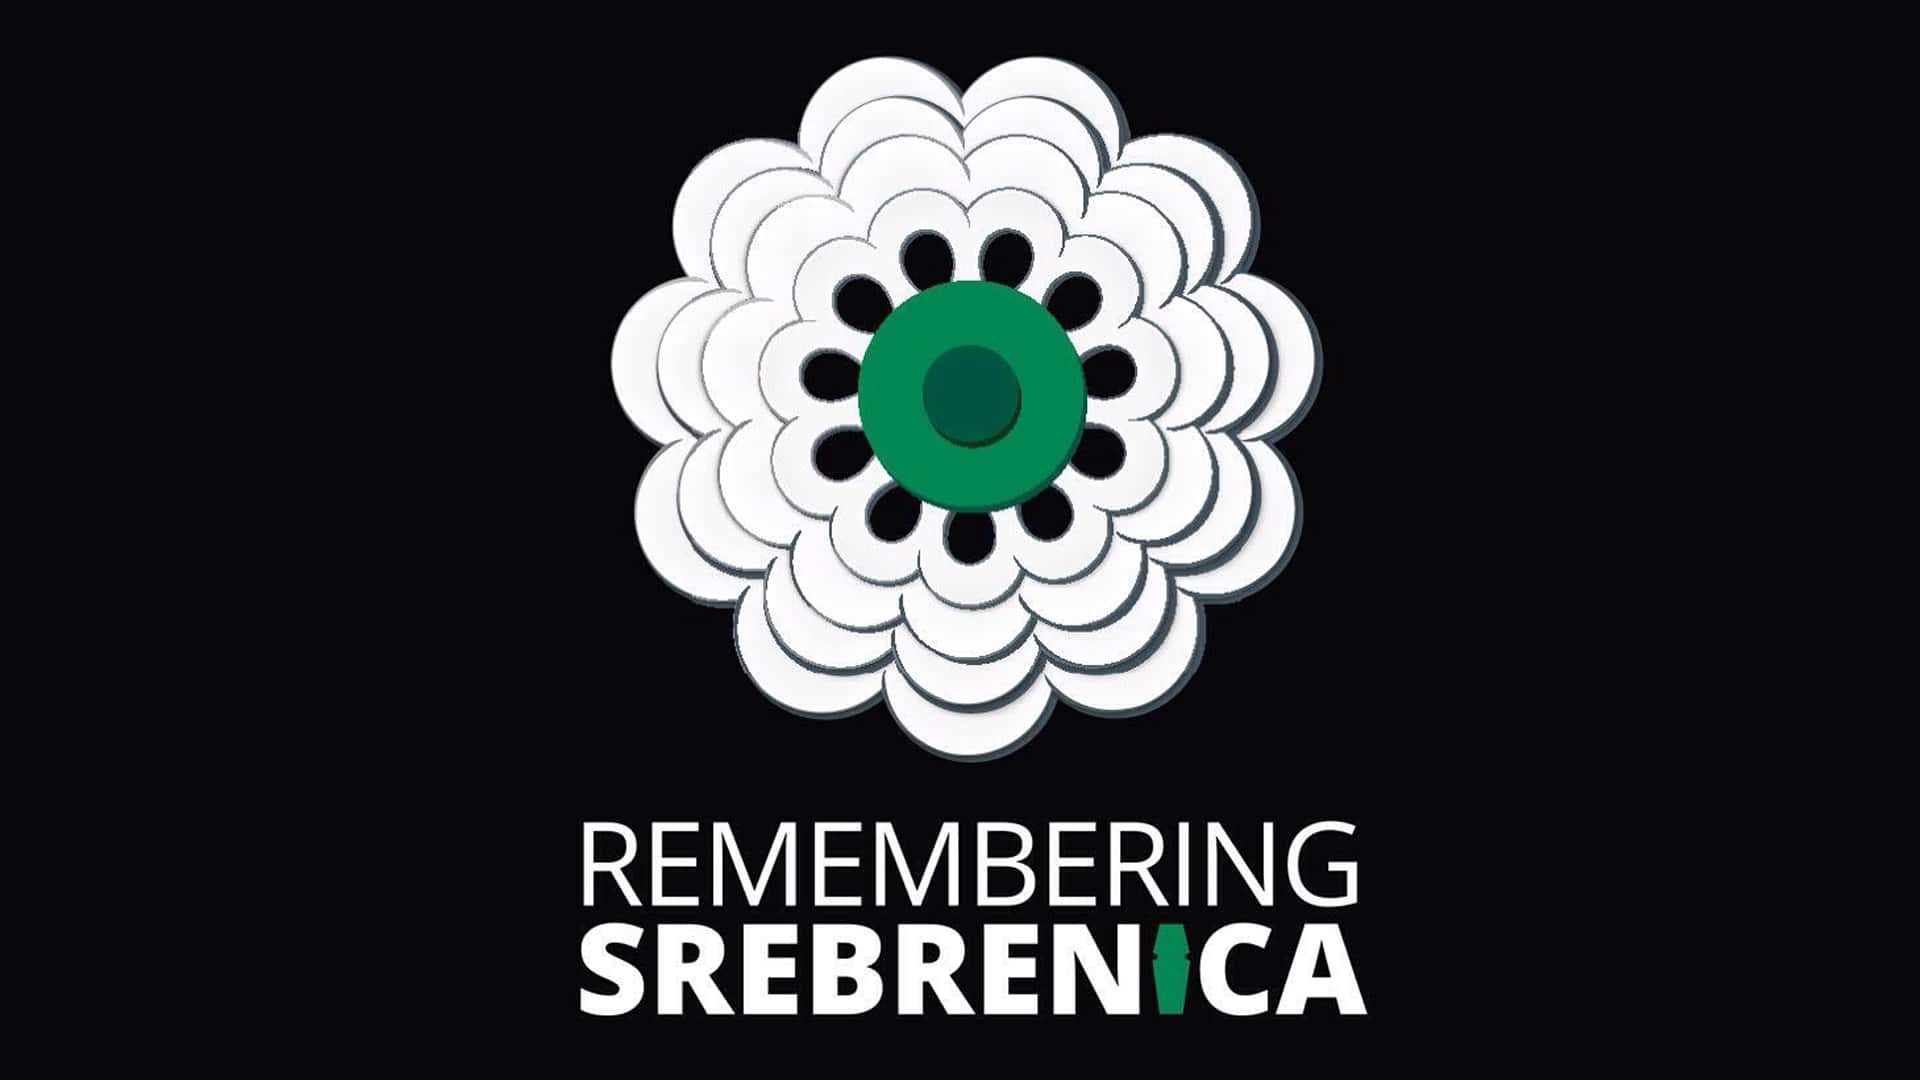 Un monumento per ricordare Srebrenica